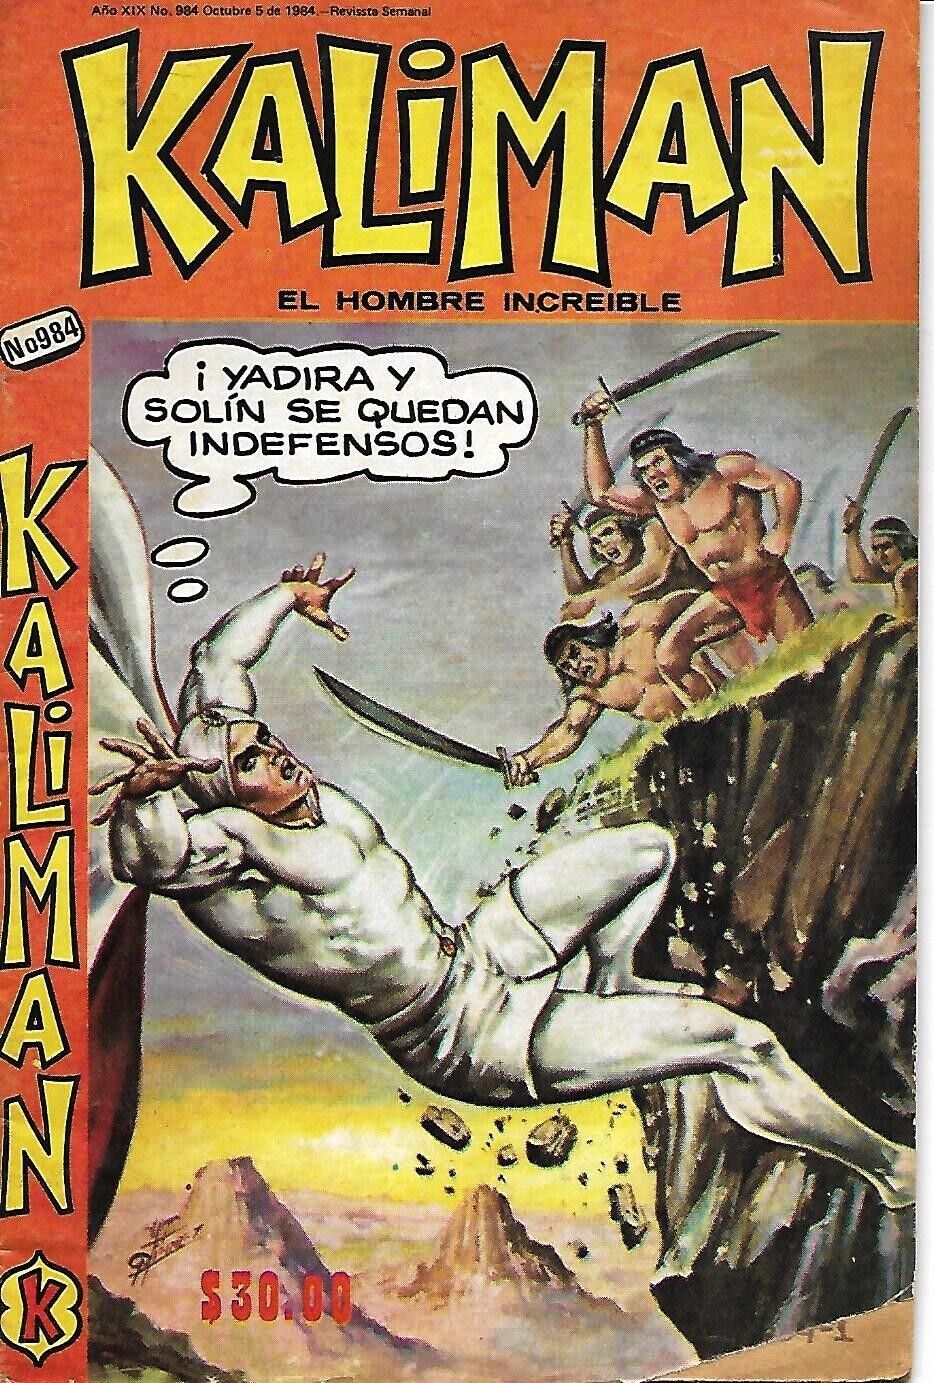 Kaliman El Hombre Increible #984 - Octubre 5, 1984 - Mexico